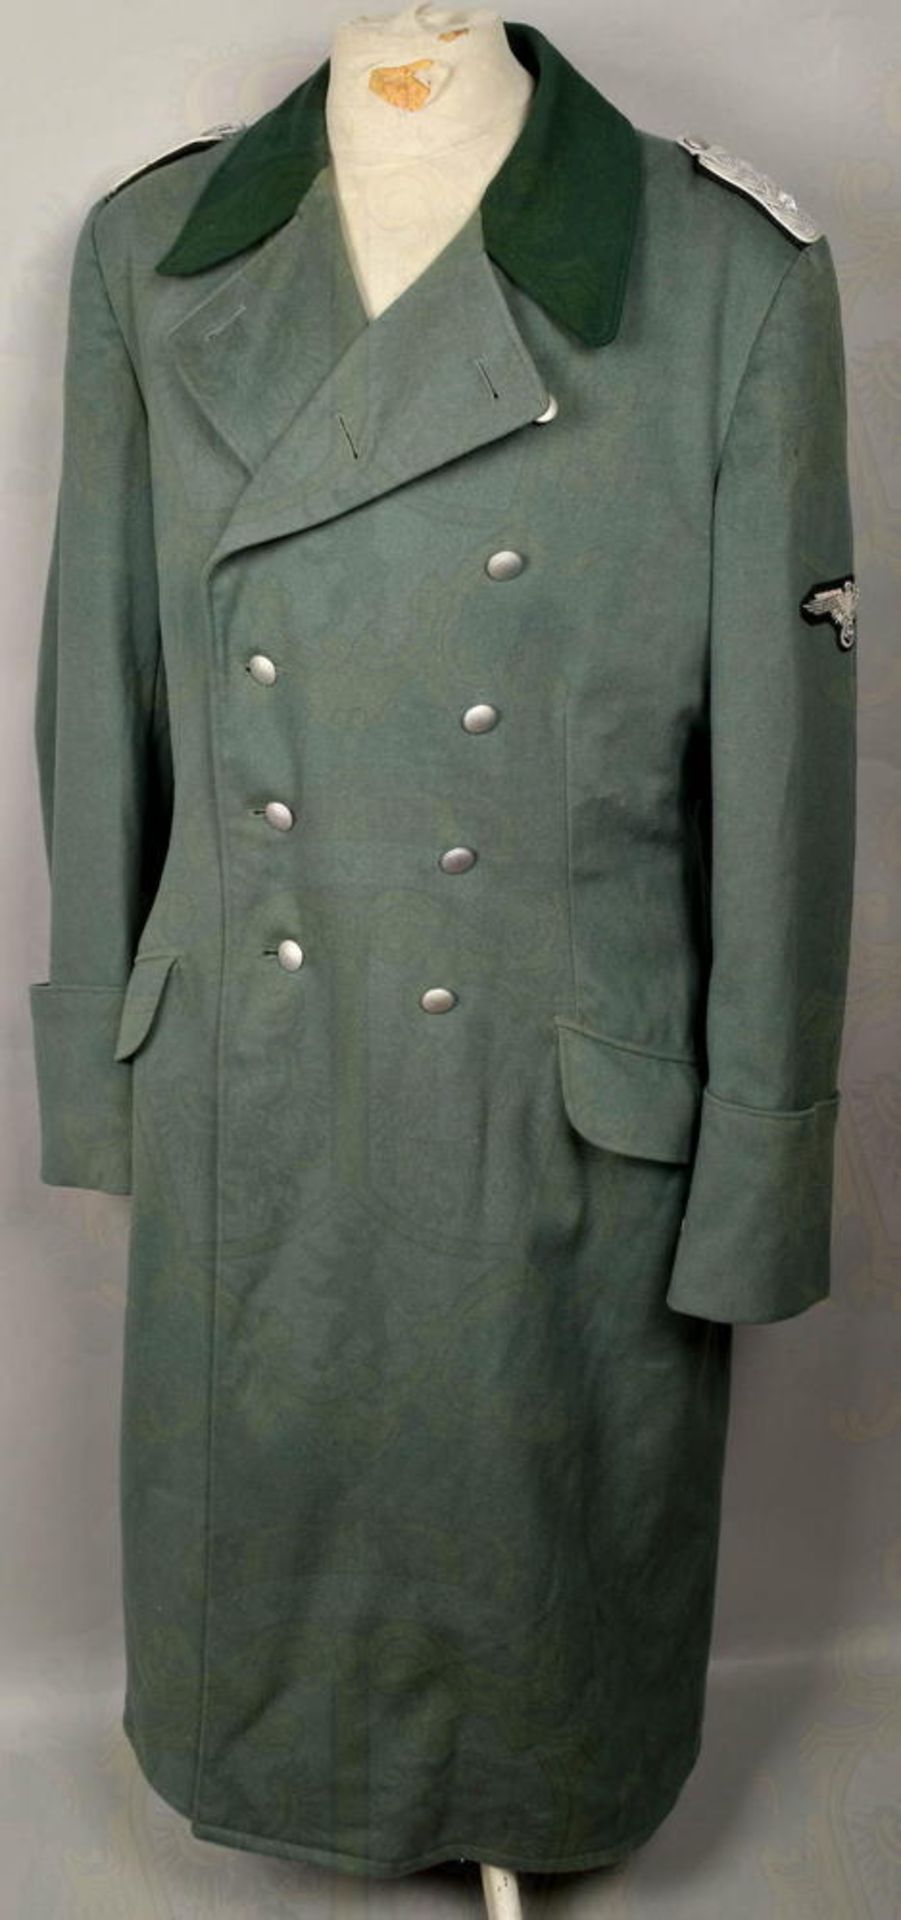 Mantel für Obersturmbannführer der Infanterie